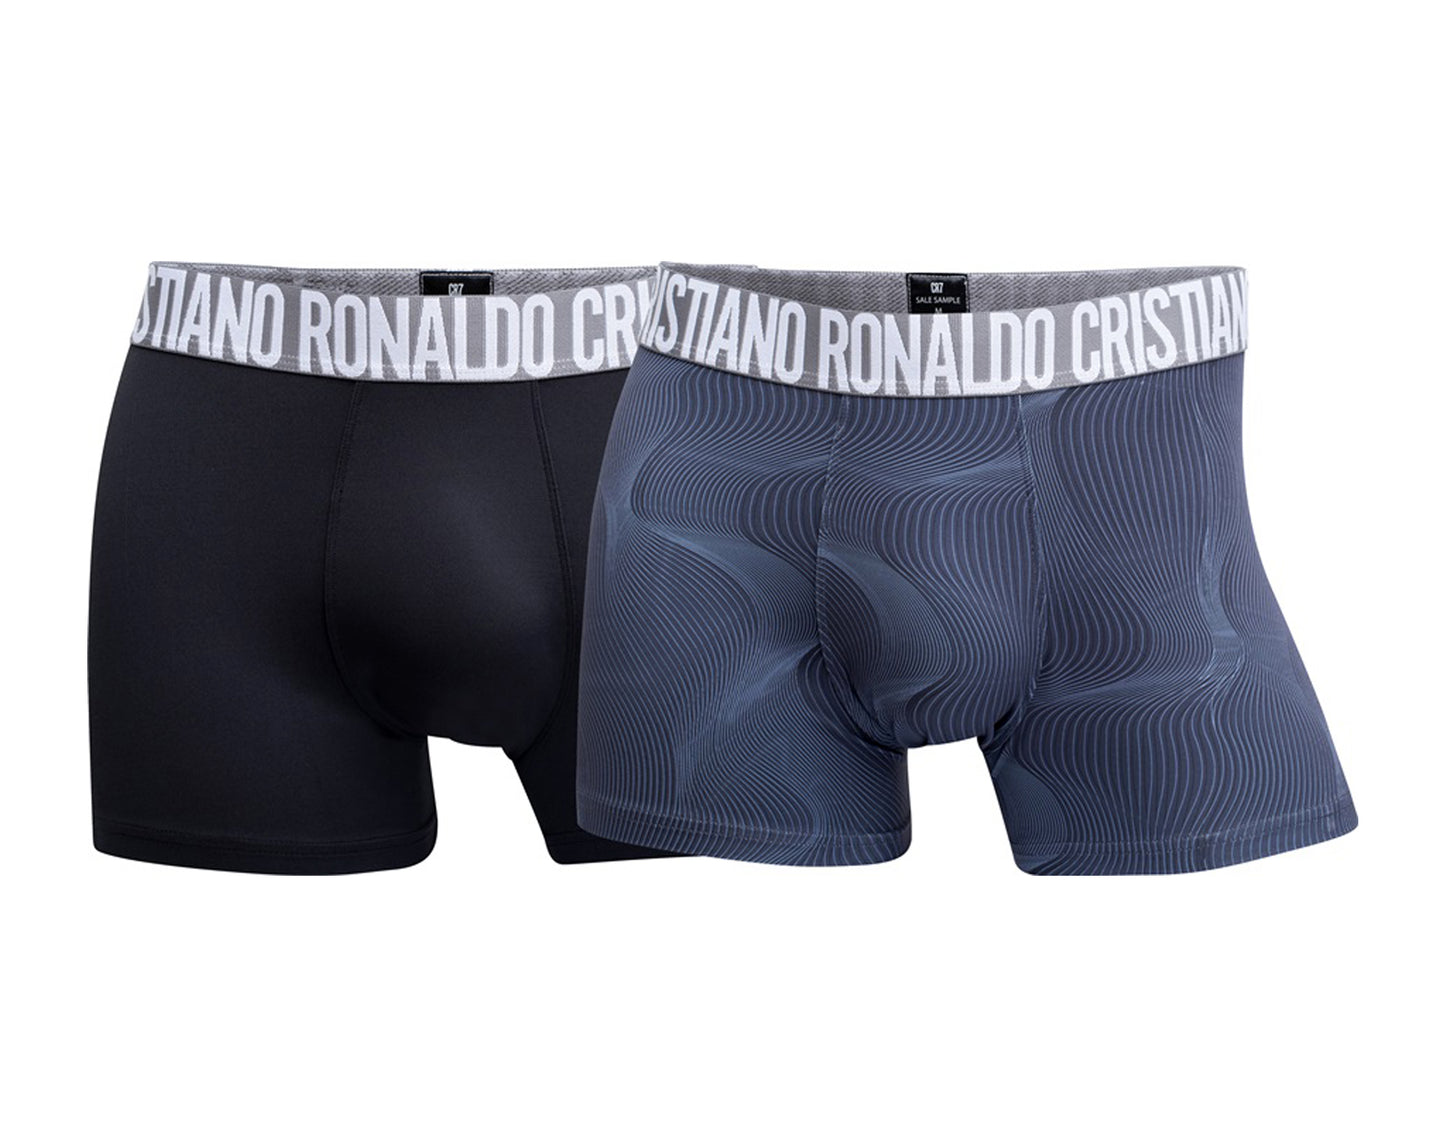 Cristiano Ronaldo CR7 Fashion 2-Pack Microfiber Trunk Boxer Briefs Men's Underwear